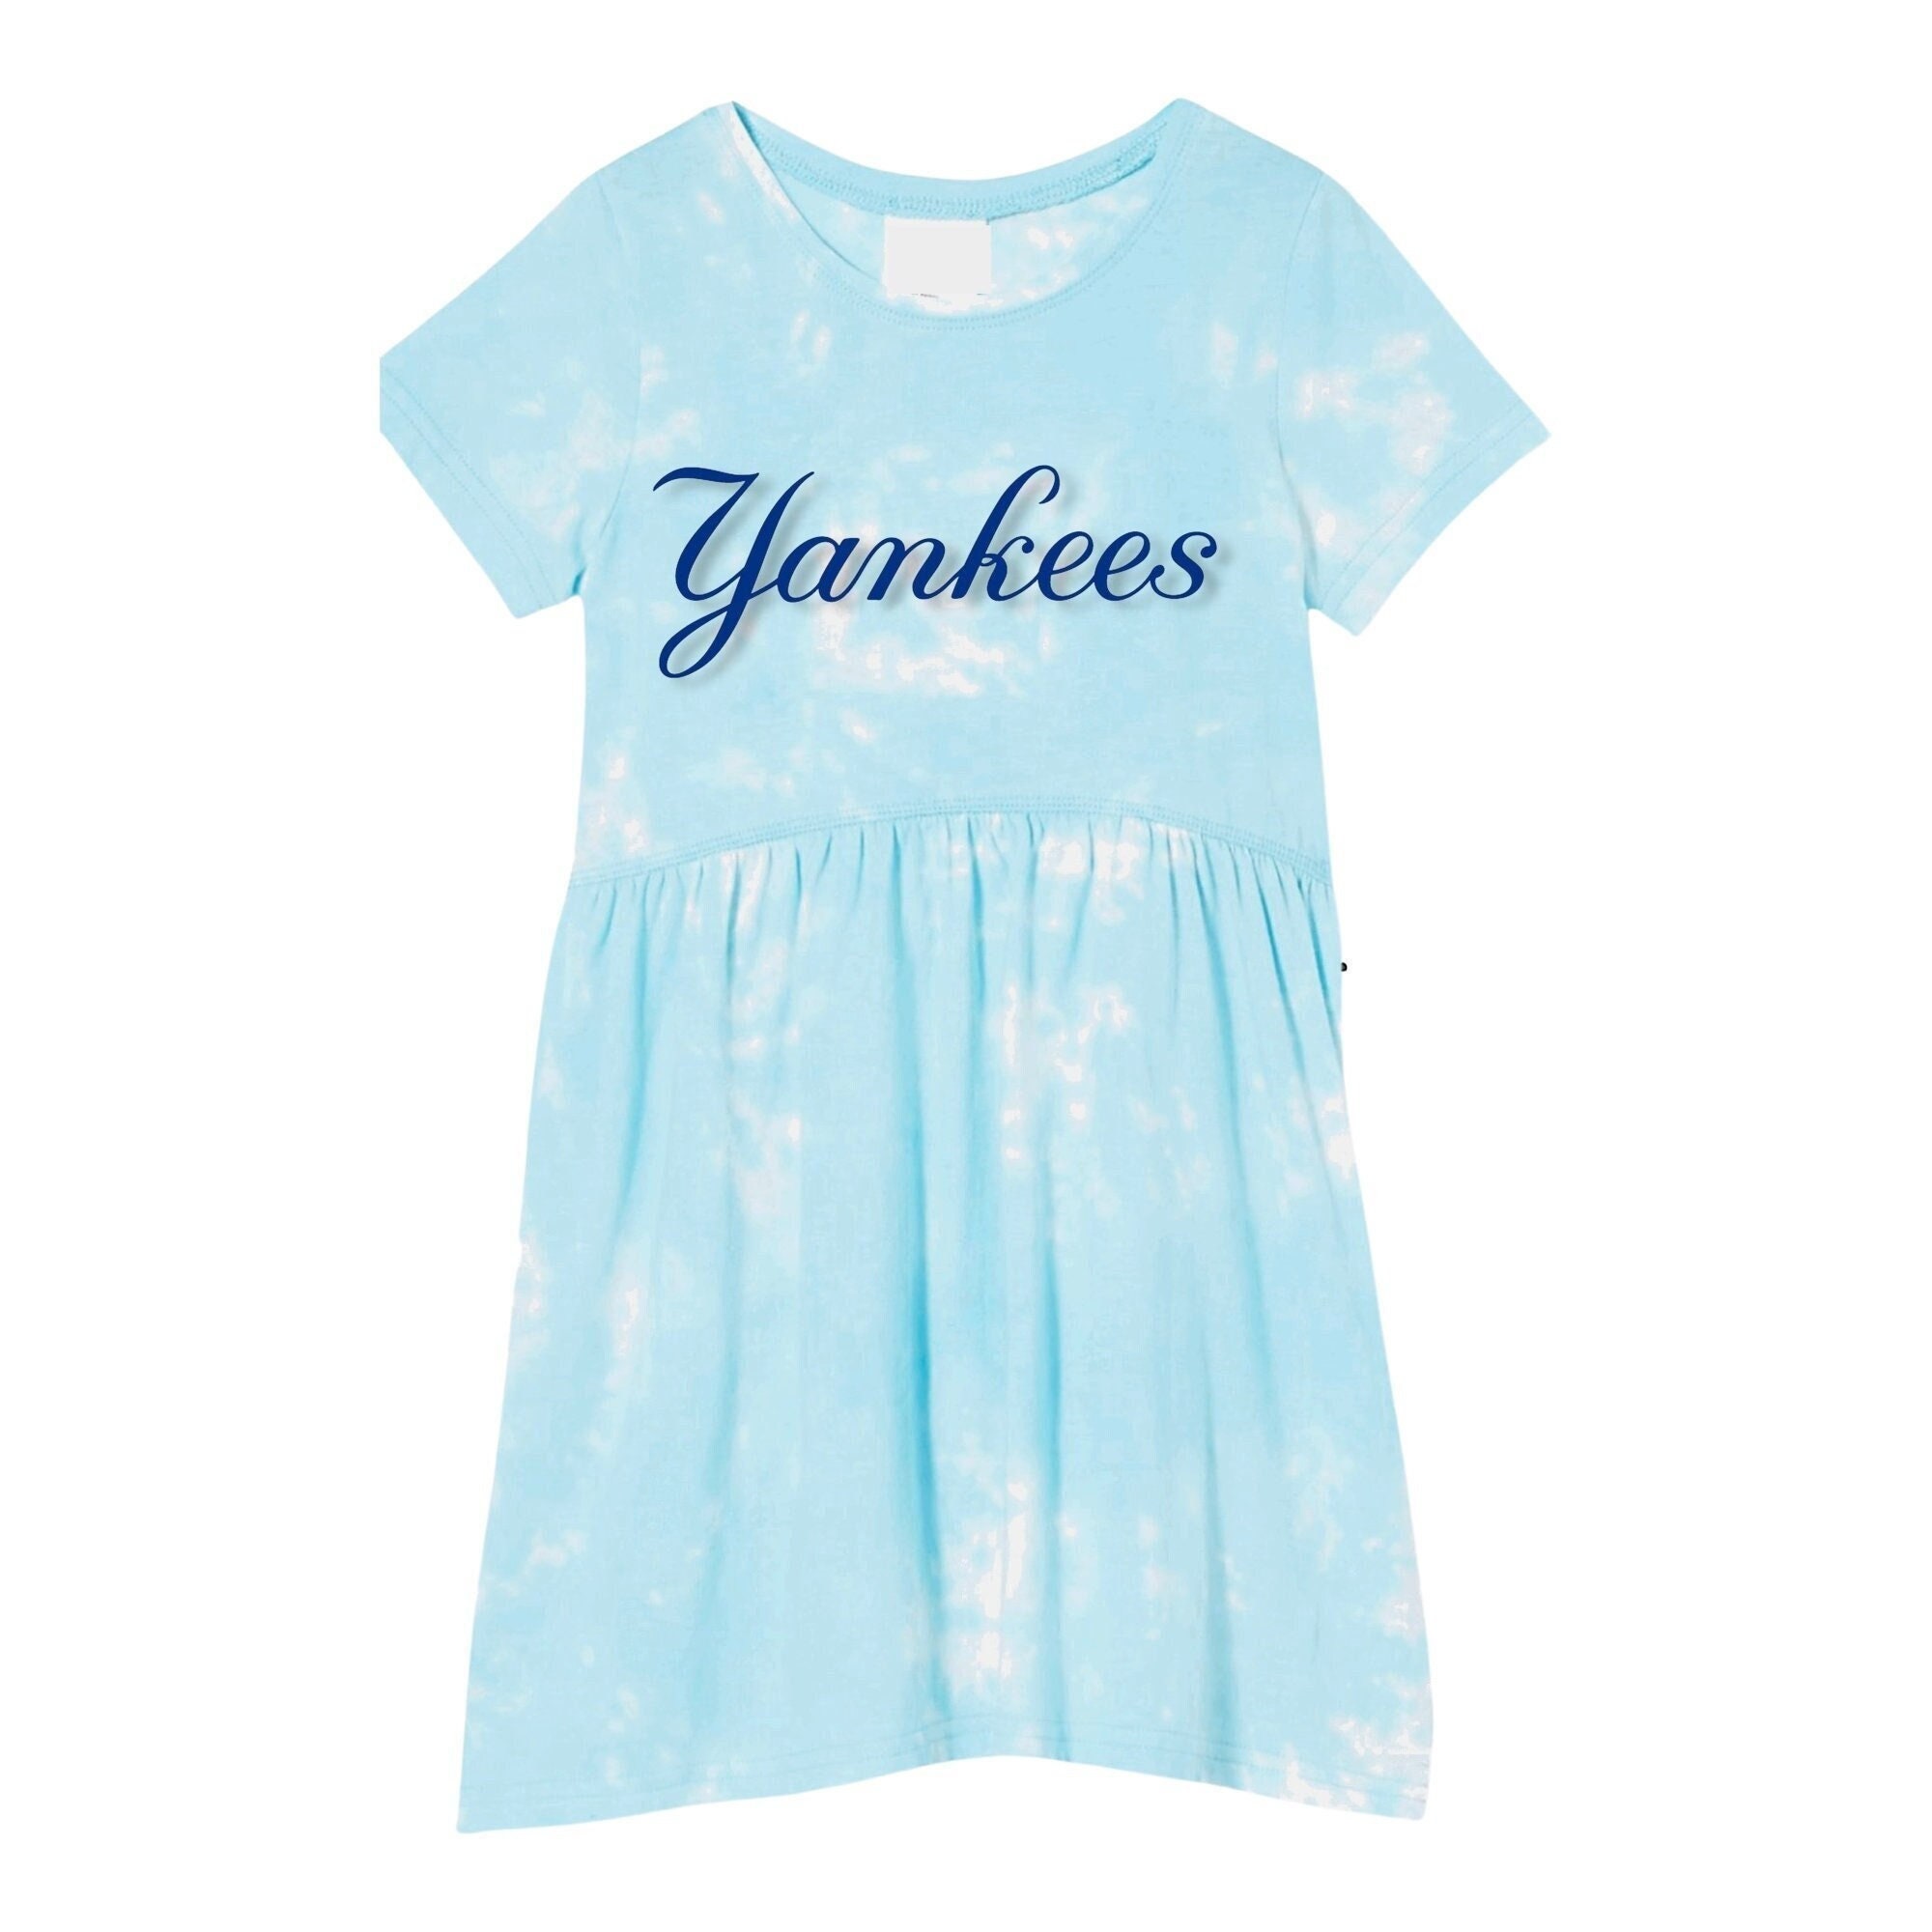 Buy Yankees Girls Tiedye Dress Online in India 